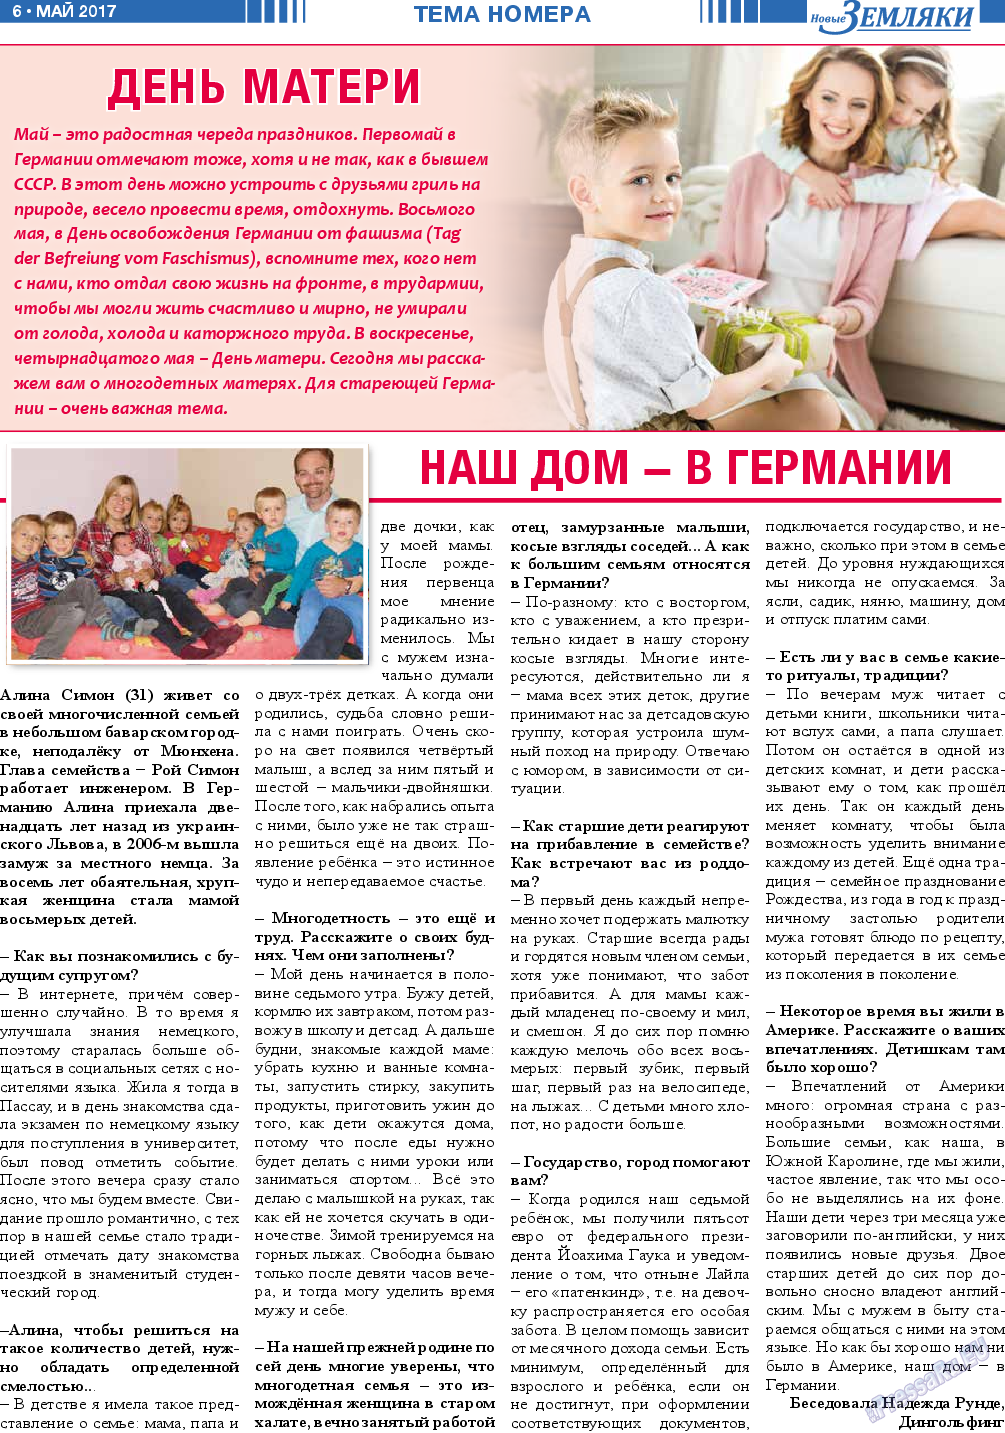 Новые Земляки, газета. 2017 №5 стр.6